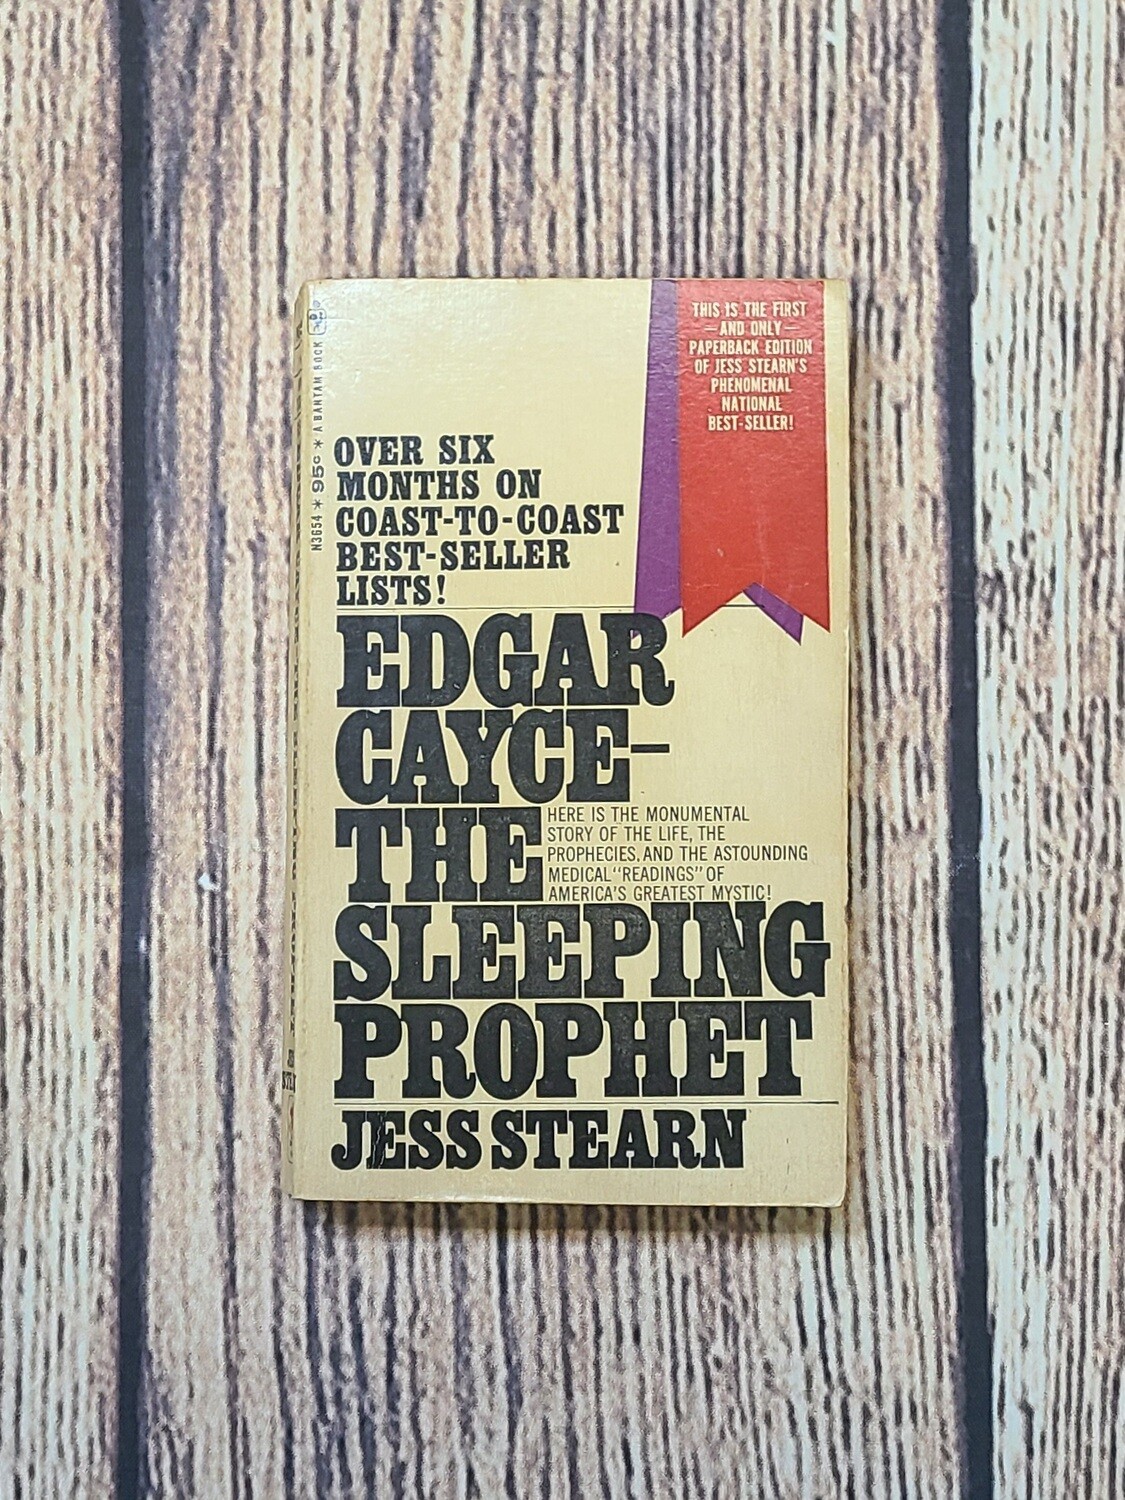 Edgar Cayce - The Sleeping Prohpet by Jess Stearn